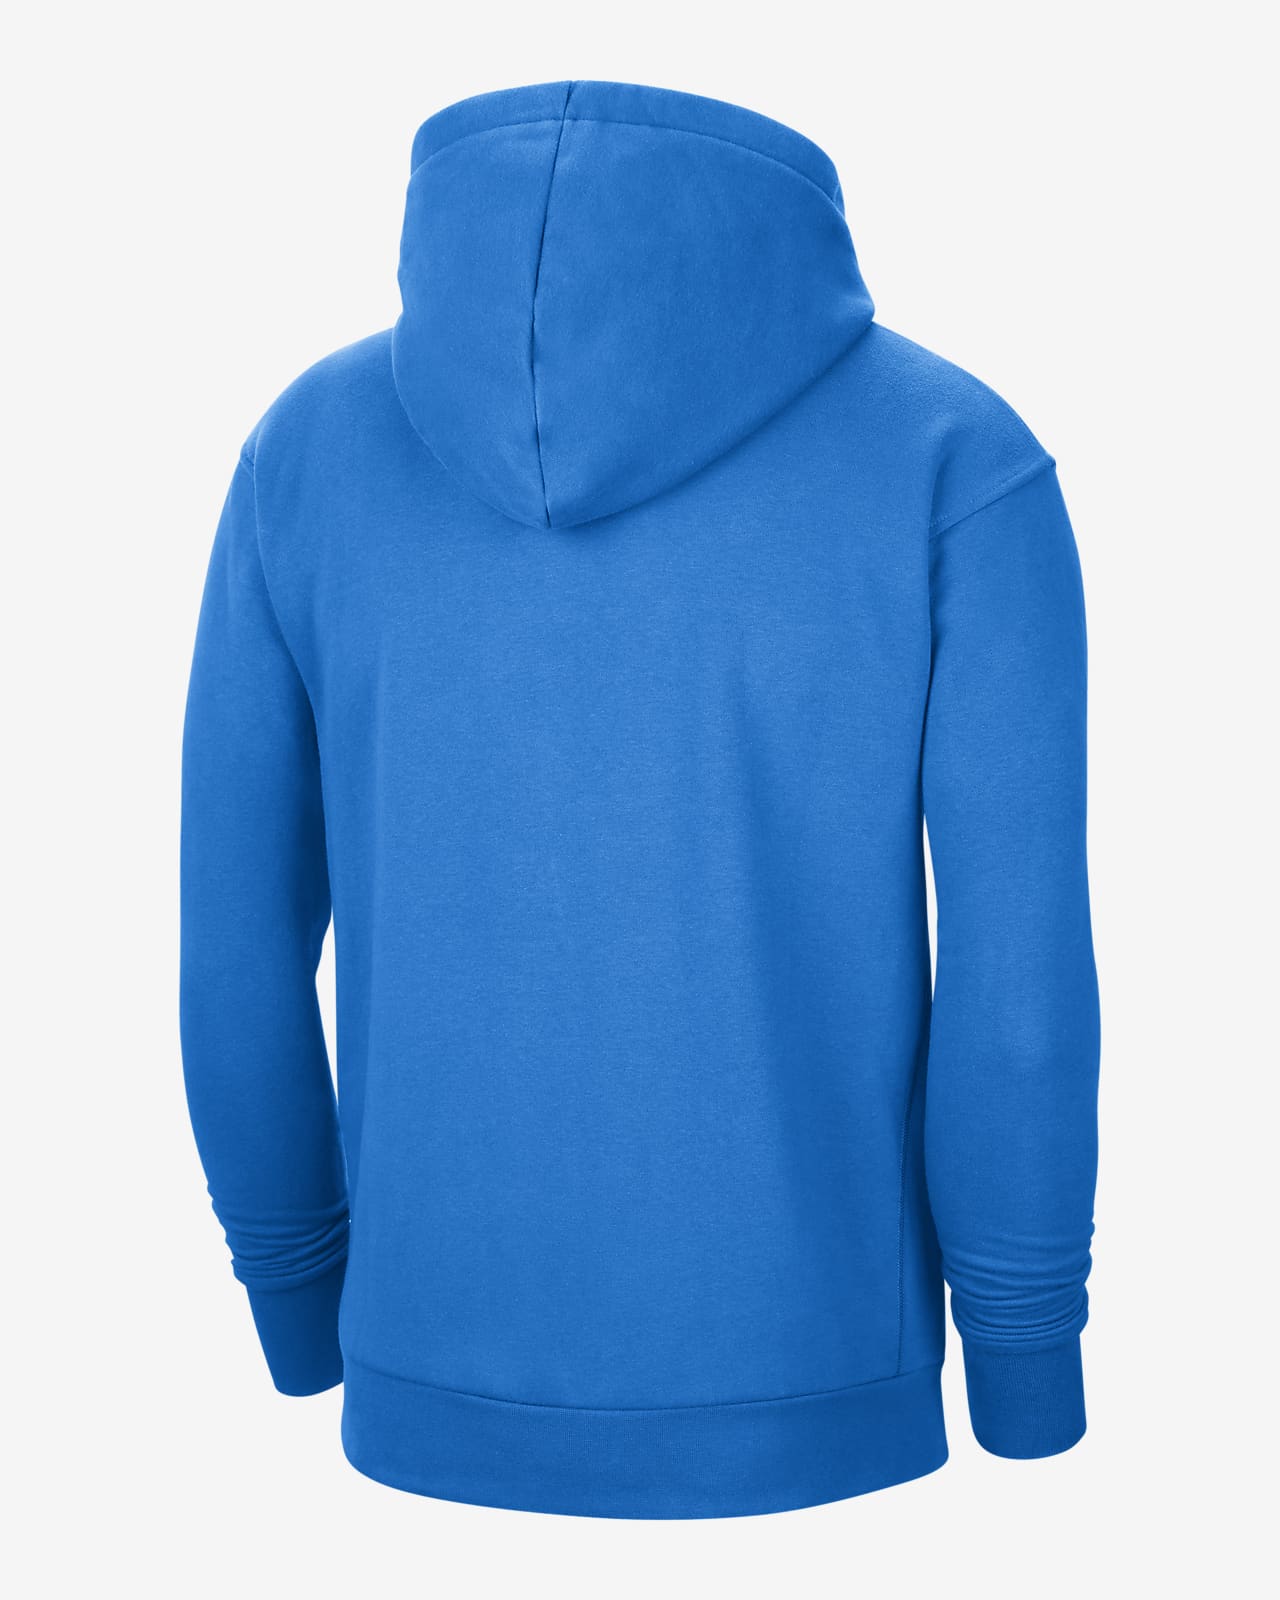 nike logo pullover hoodie